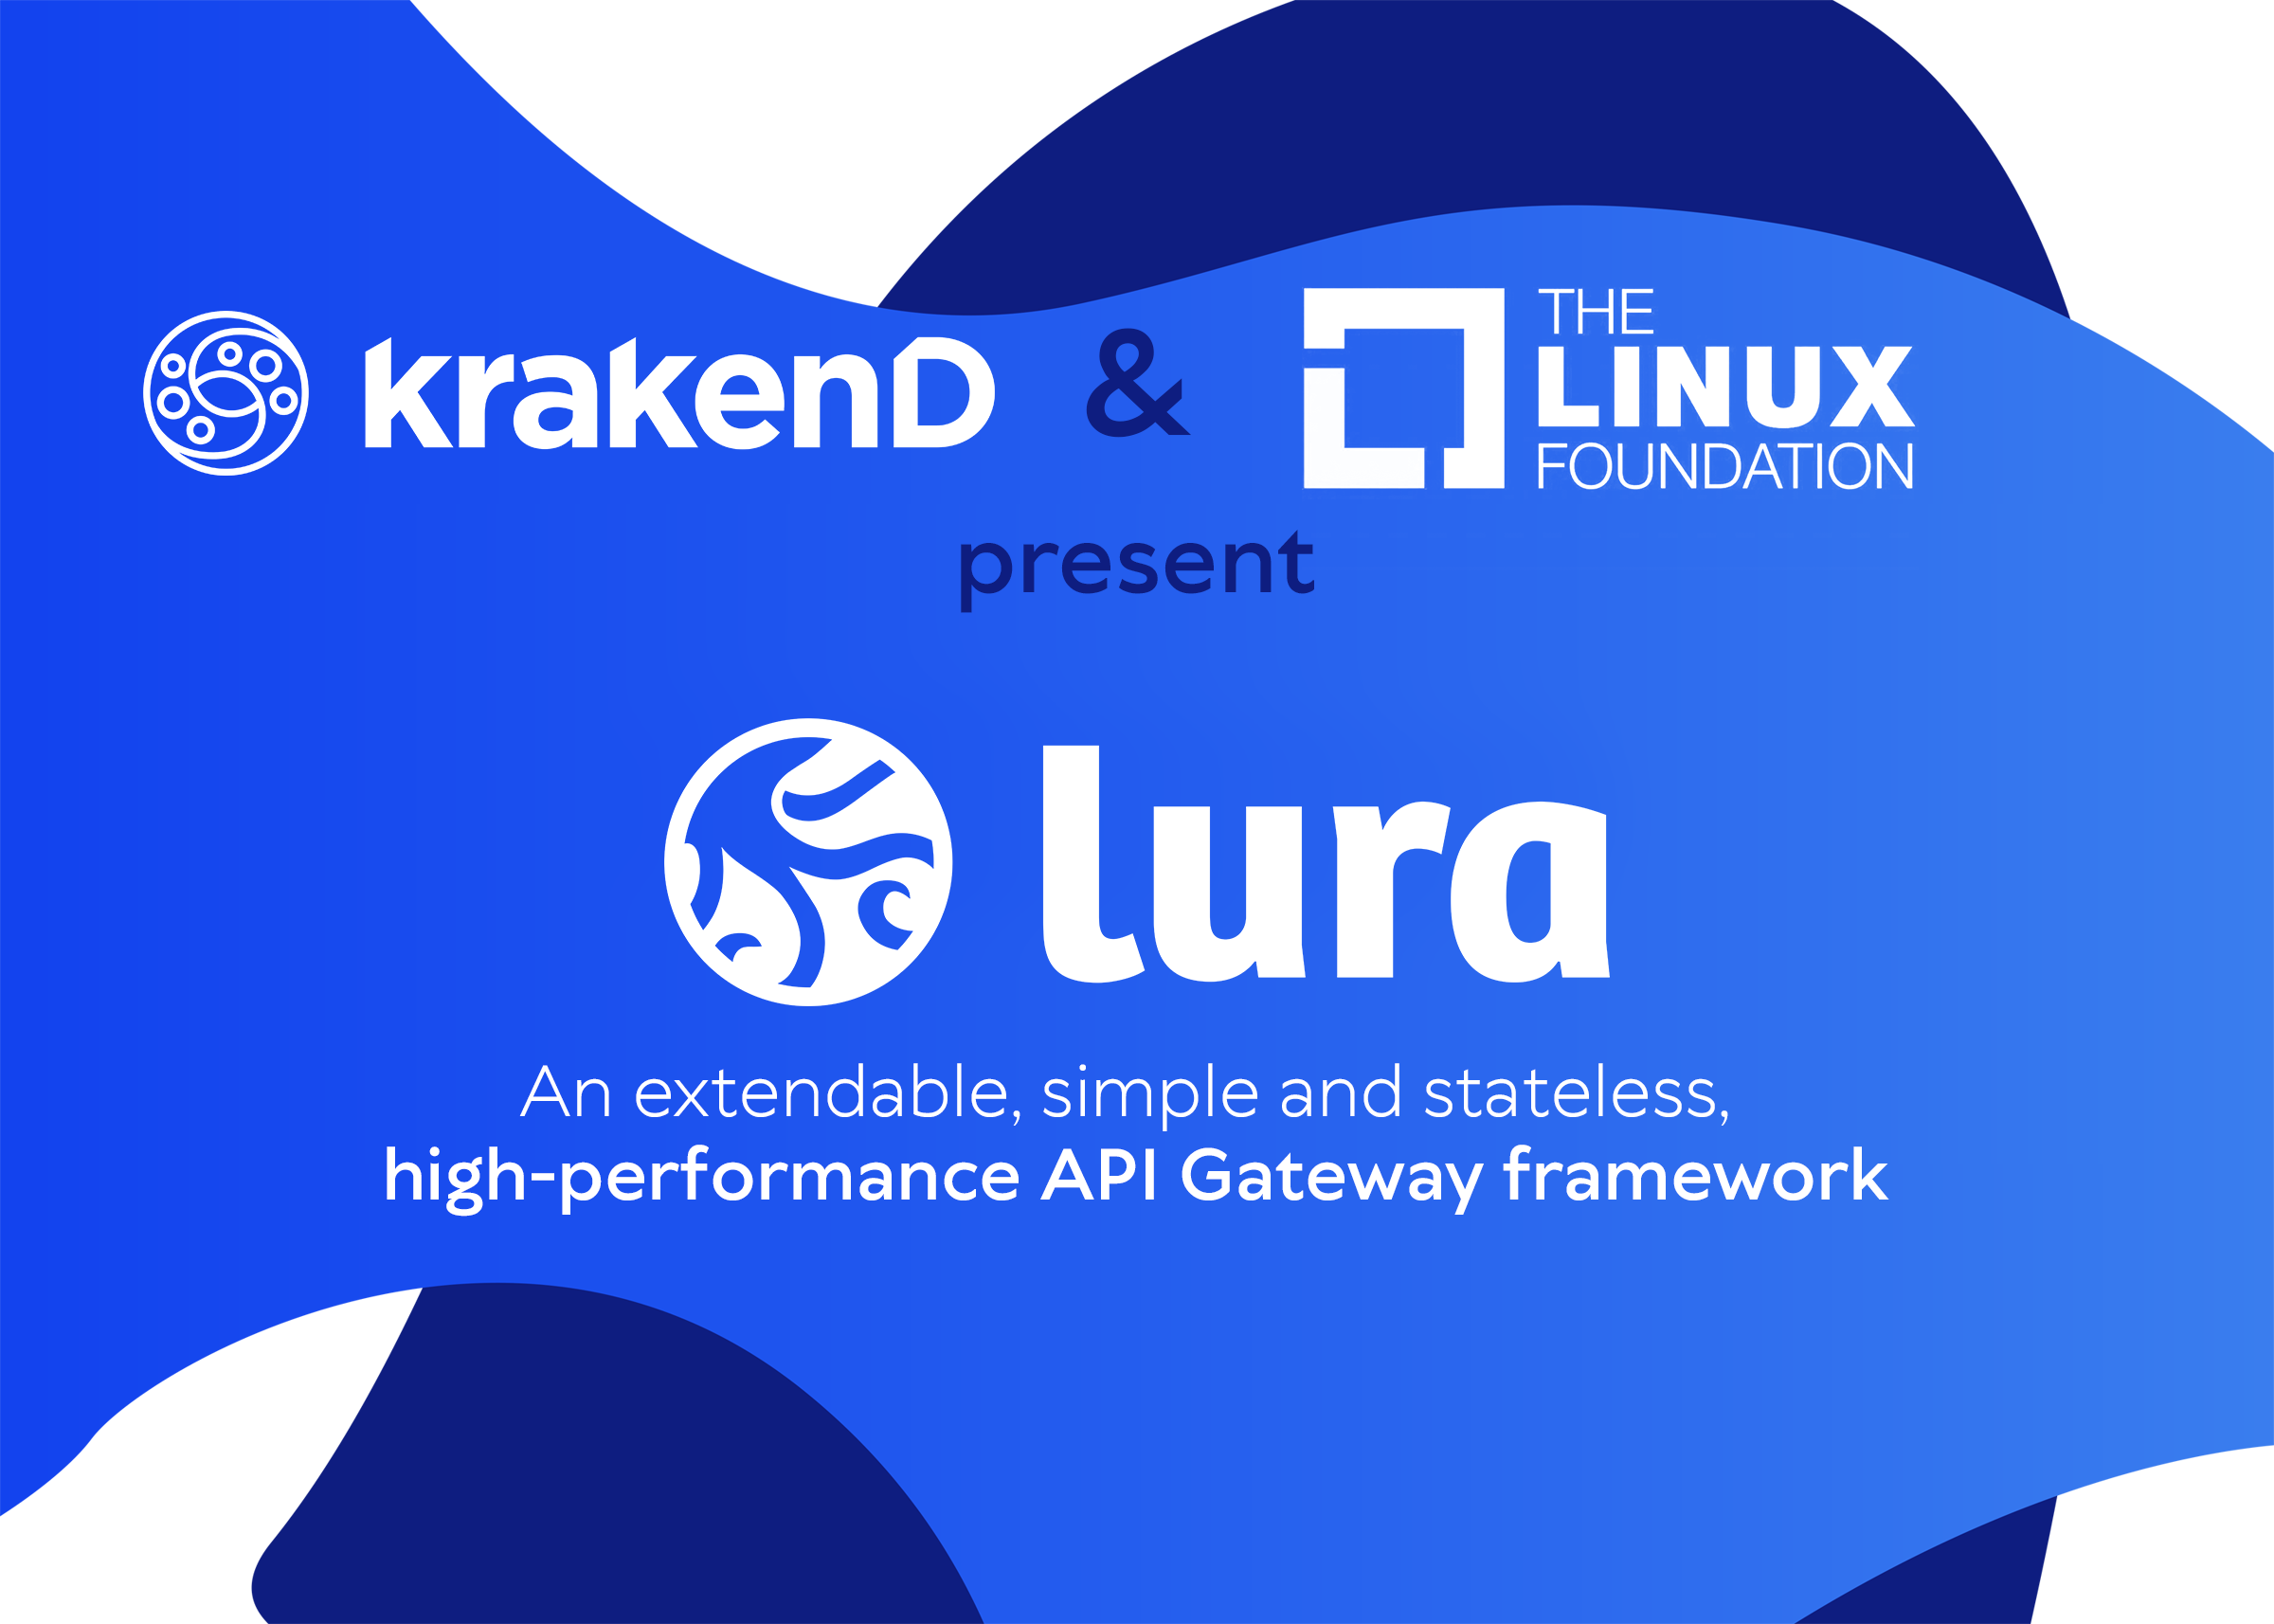 KrakenD framework joins the Linux Foundation